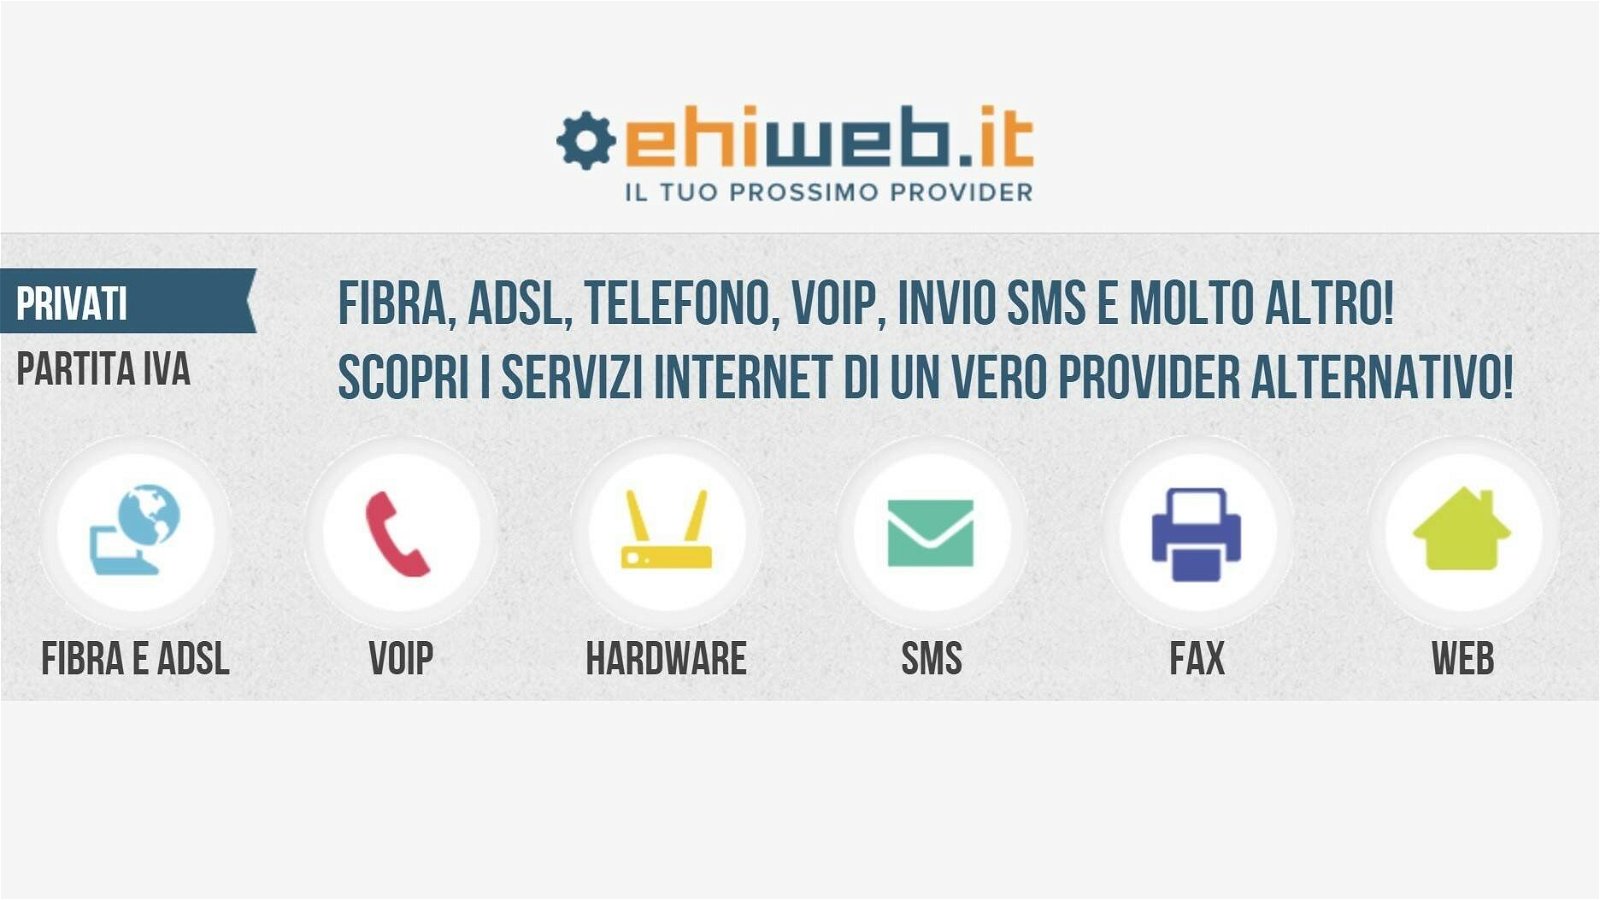 Immagine di Ehiweb, i vantaggi di avere un provider di telecomunicazione alternativo